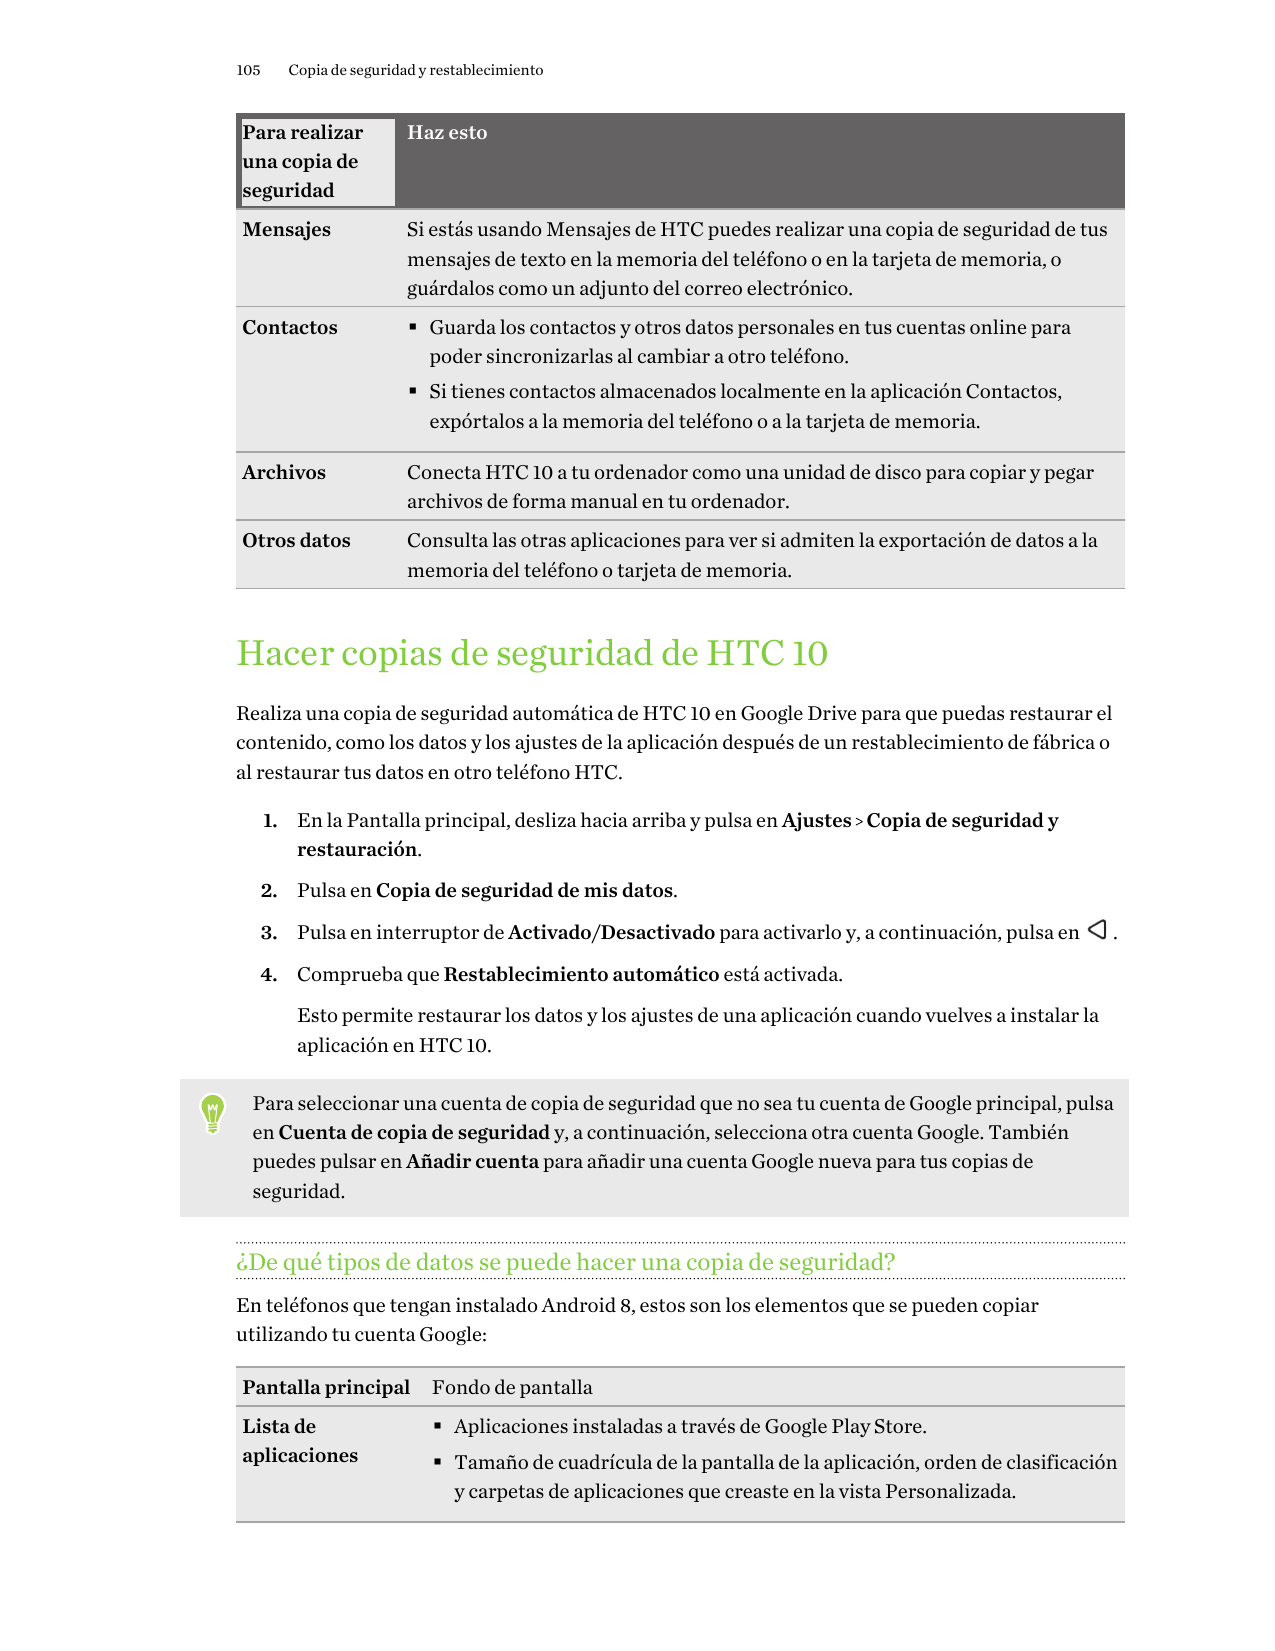 105Copia de seguridad y restablecimientoPara realizaruna copia deseguridadHaz estoMensajesSi estás usando Mensajes de HTC puedes